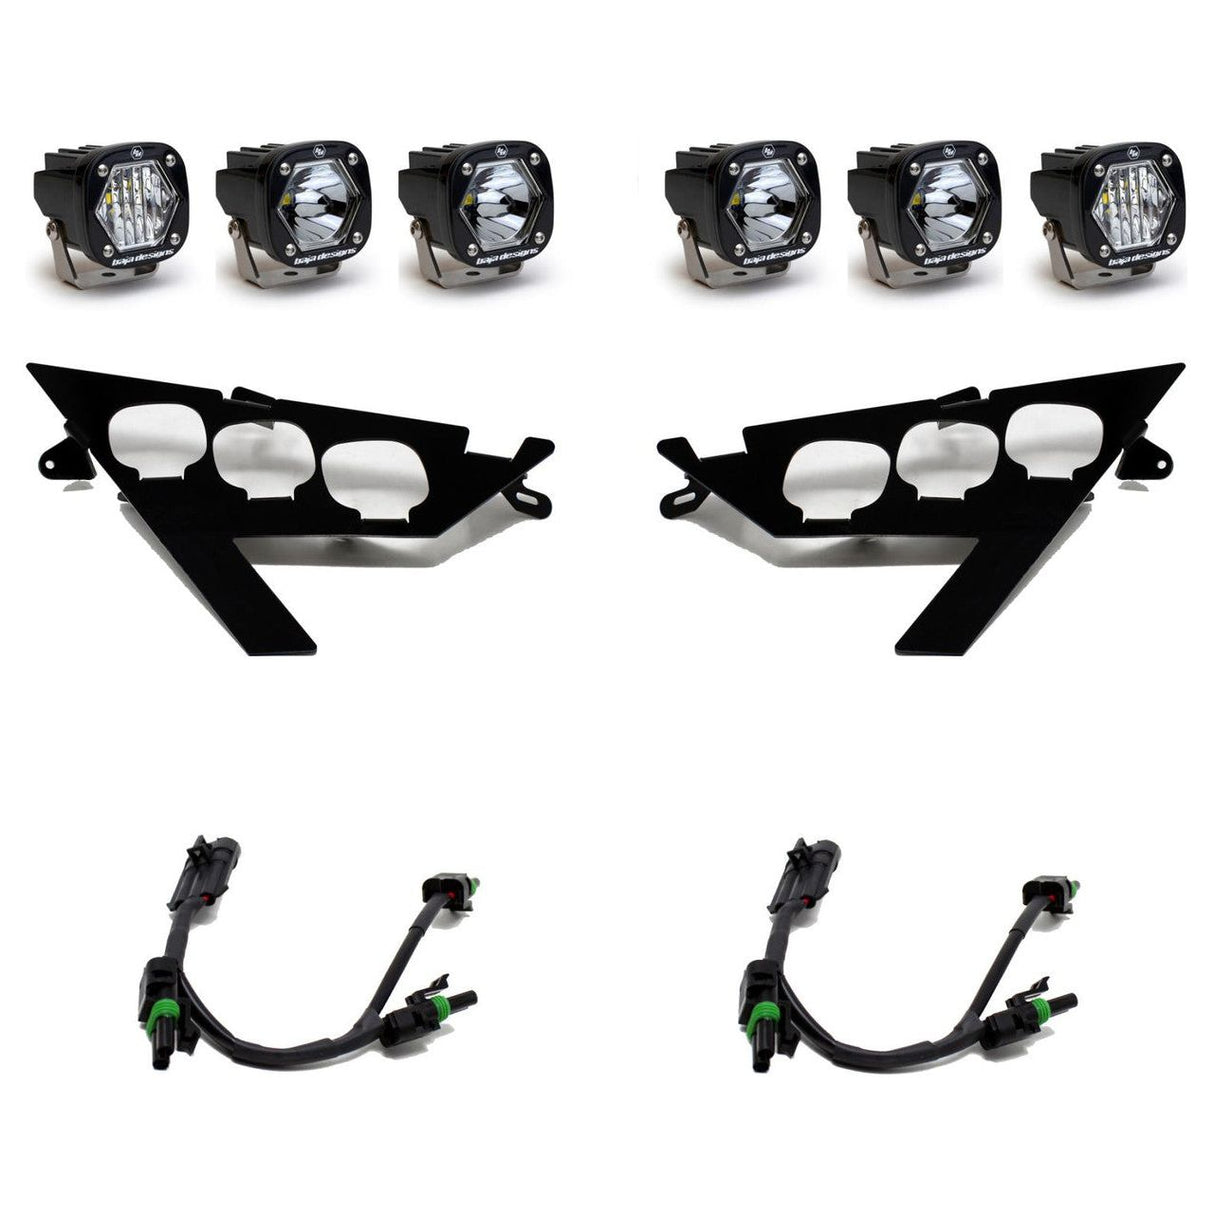 Polaris RZR Pro / Turbo R S1 Triple LED/Laser Headlight Kit